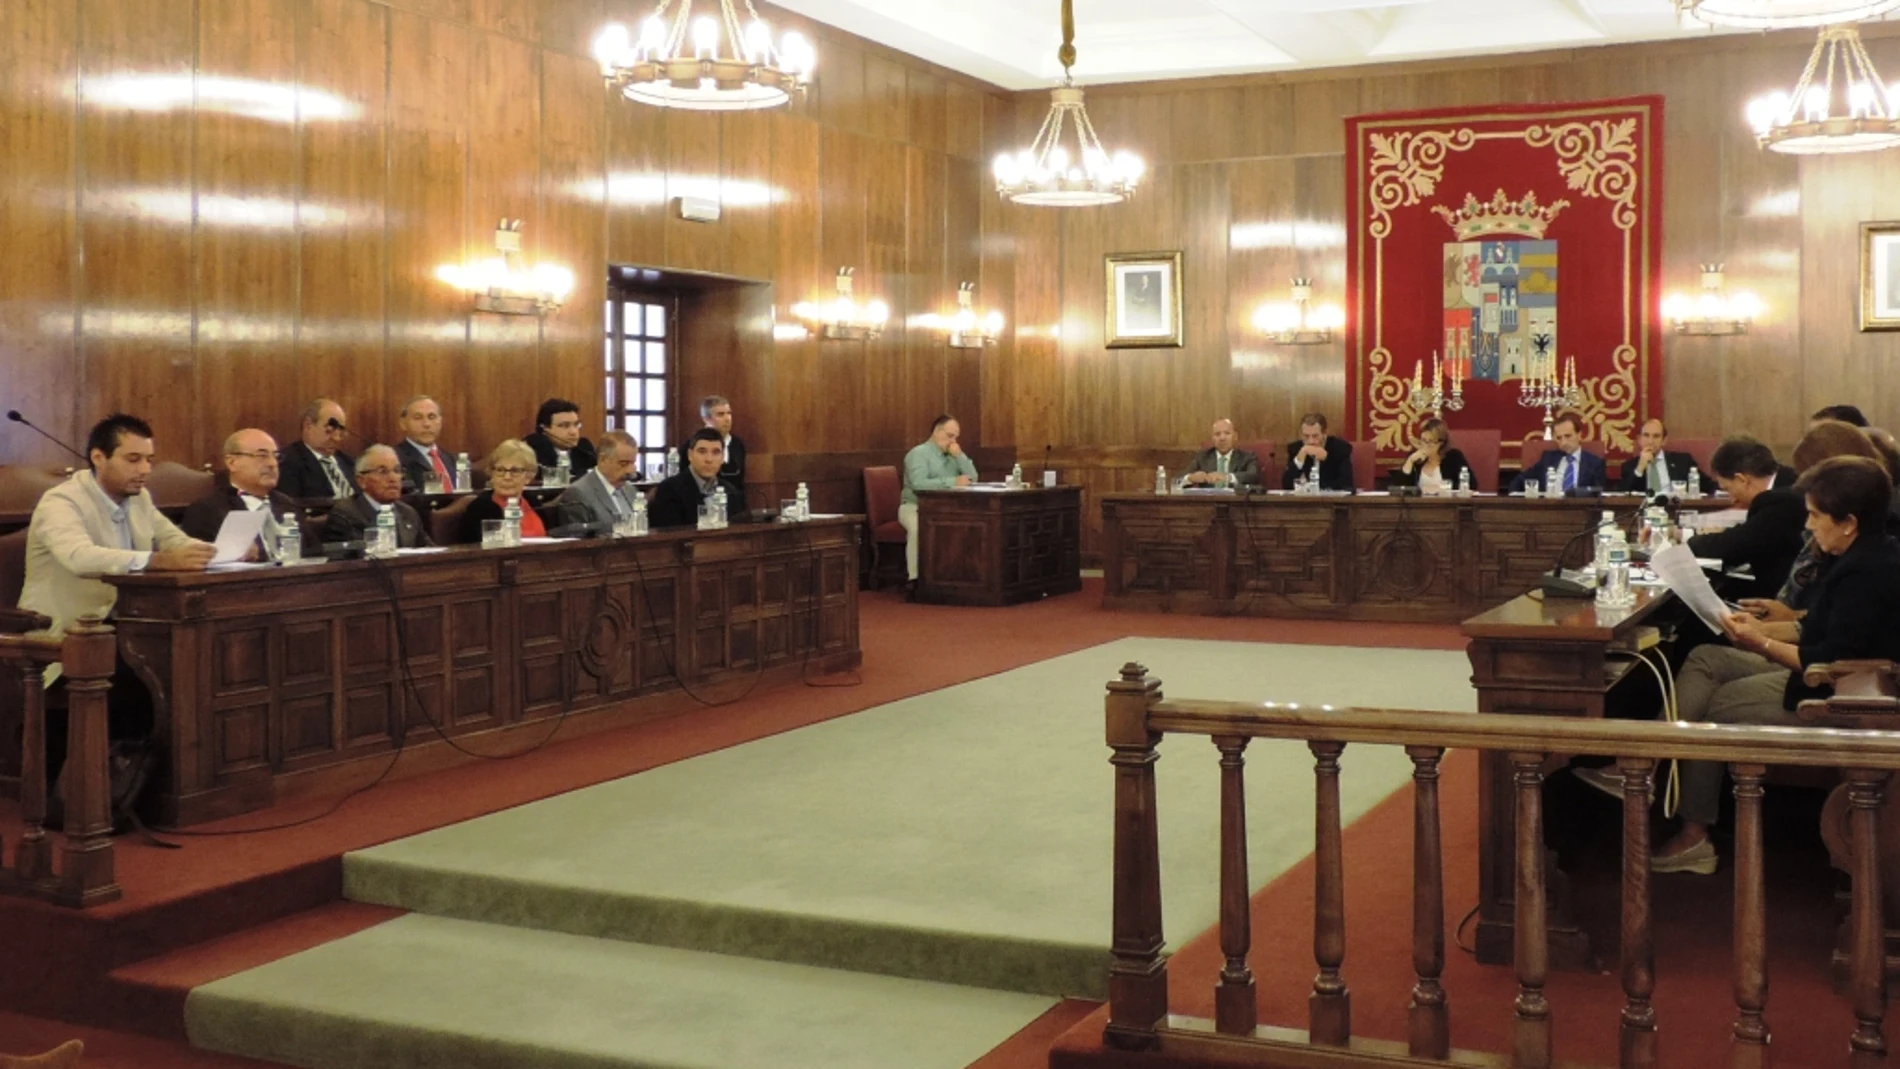 Momento del pleno en el que el diputado Carrión lee la moción en apoyo a los festejos taurinos